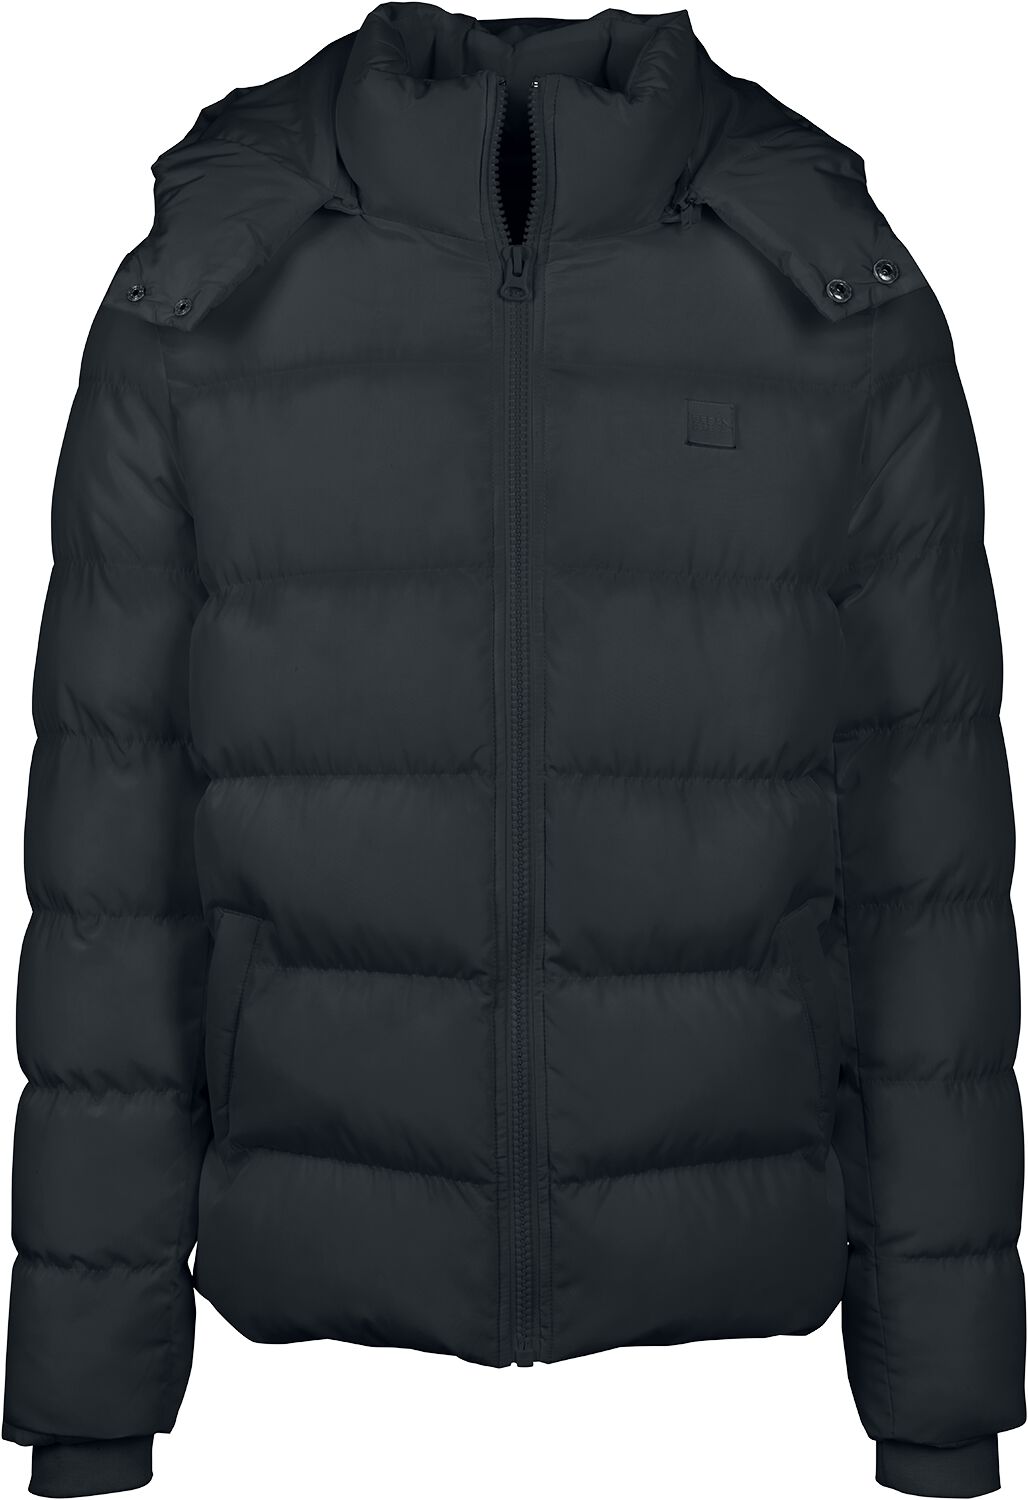 Urban Classics Übergangsjacke - Hooded Puffer Jacket - L bis 5XL - für Männer - Größe 5XL - schwarz